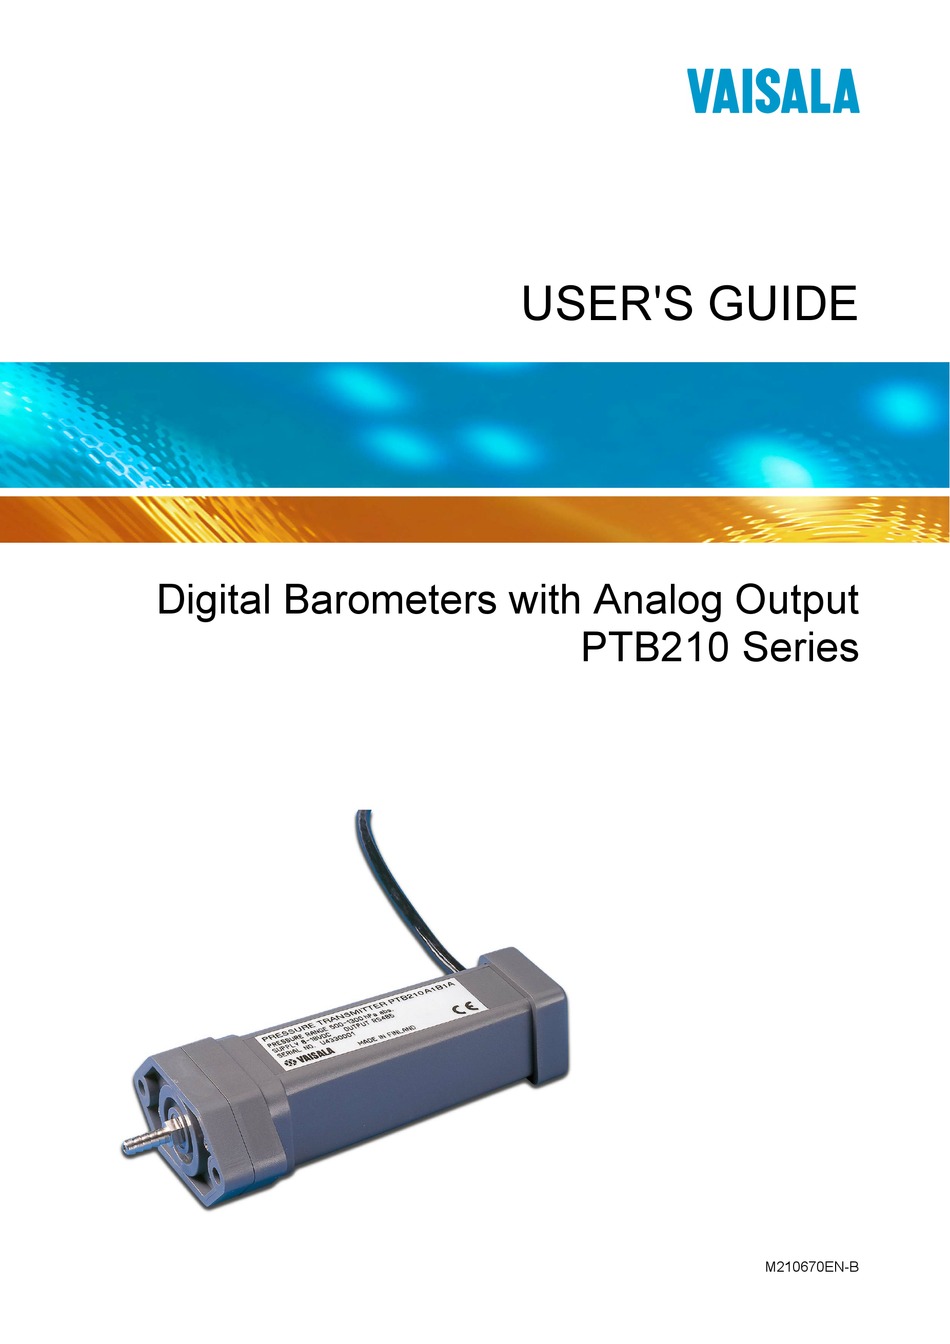 PTB210 Digital Barometer